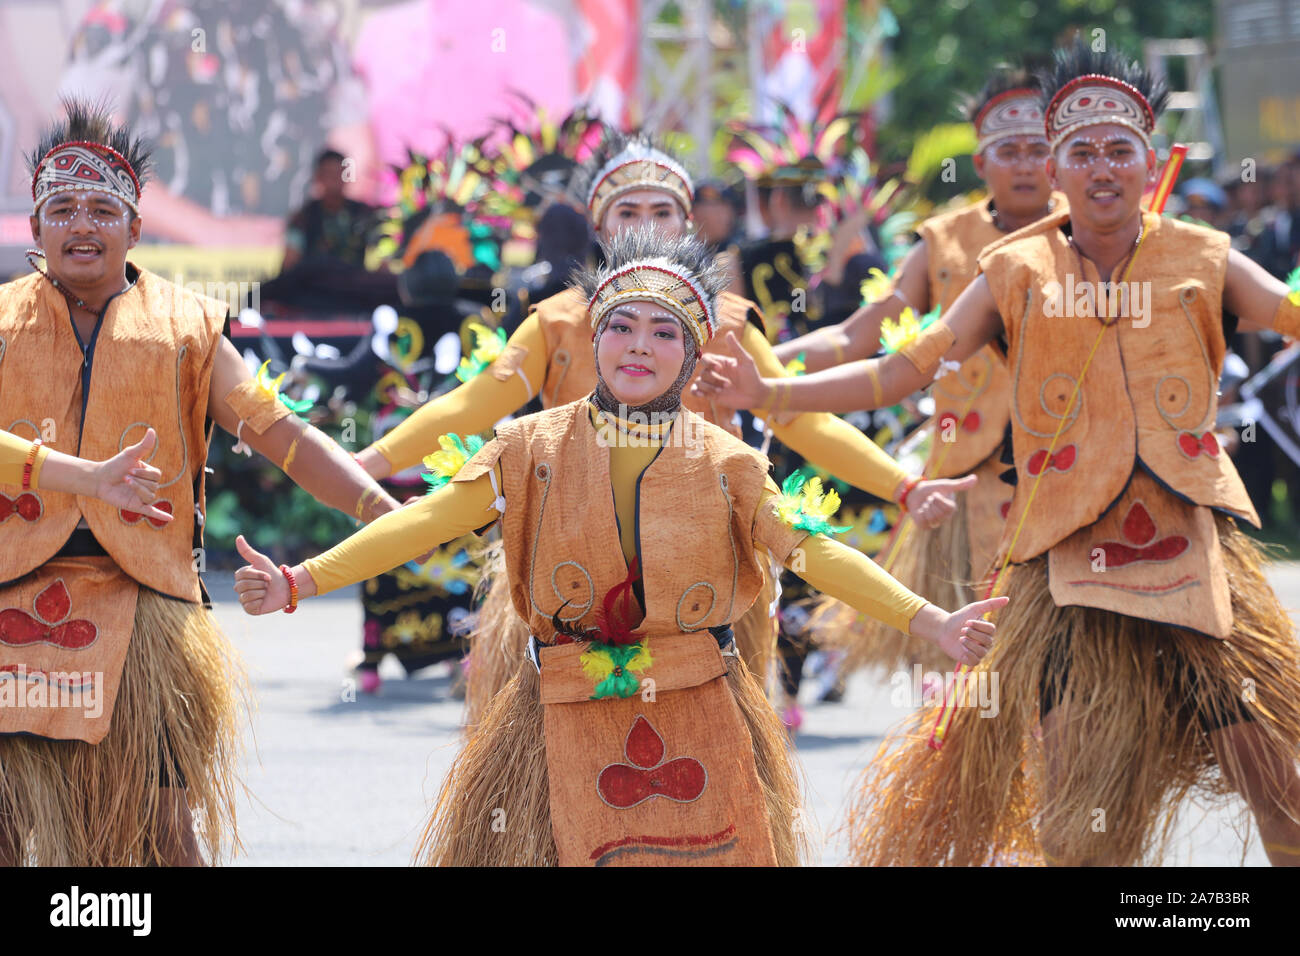 Un certain nombre de danseurs exécutent des danses indonésiennes traditionnelles à des activités culturelles Banque D'Images